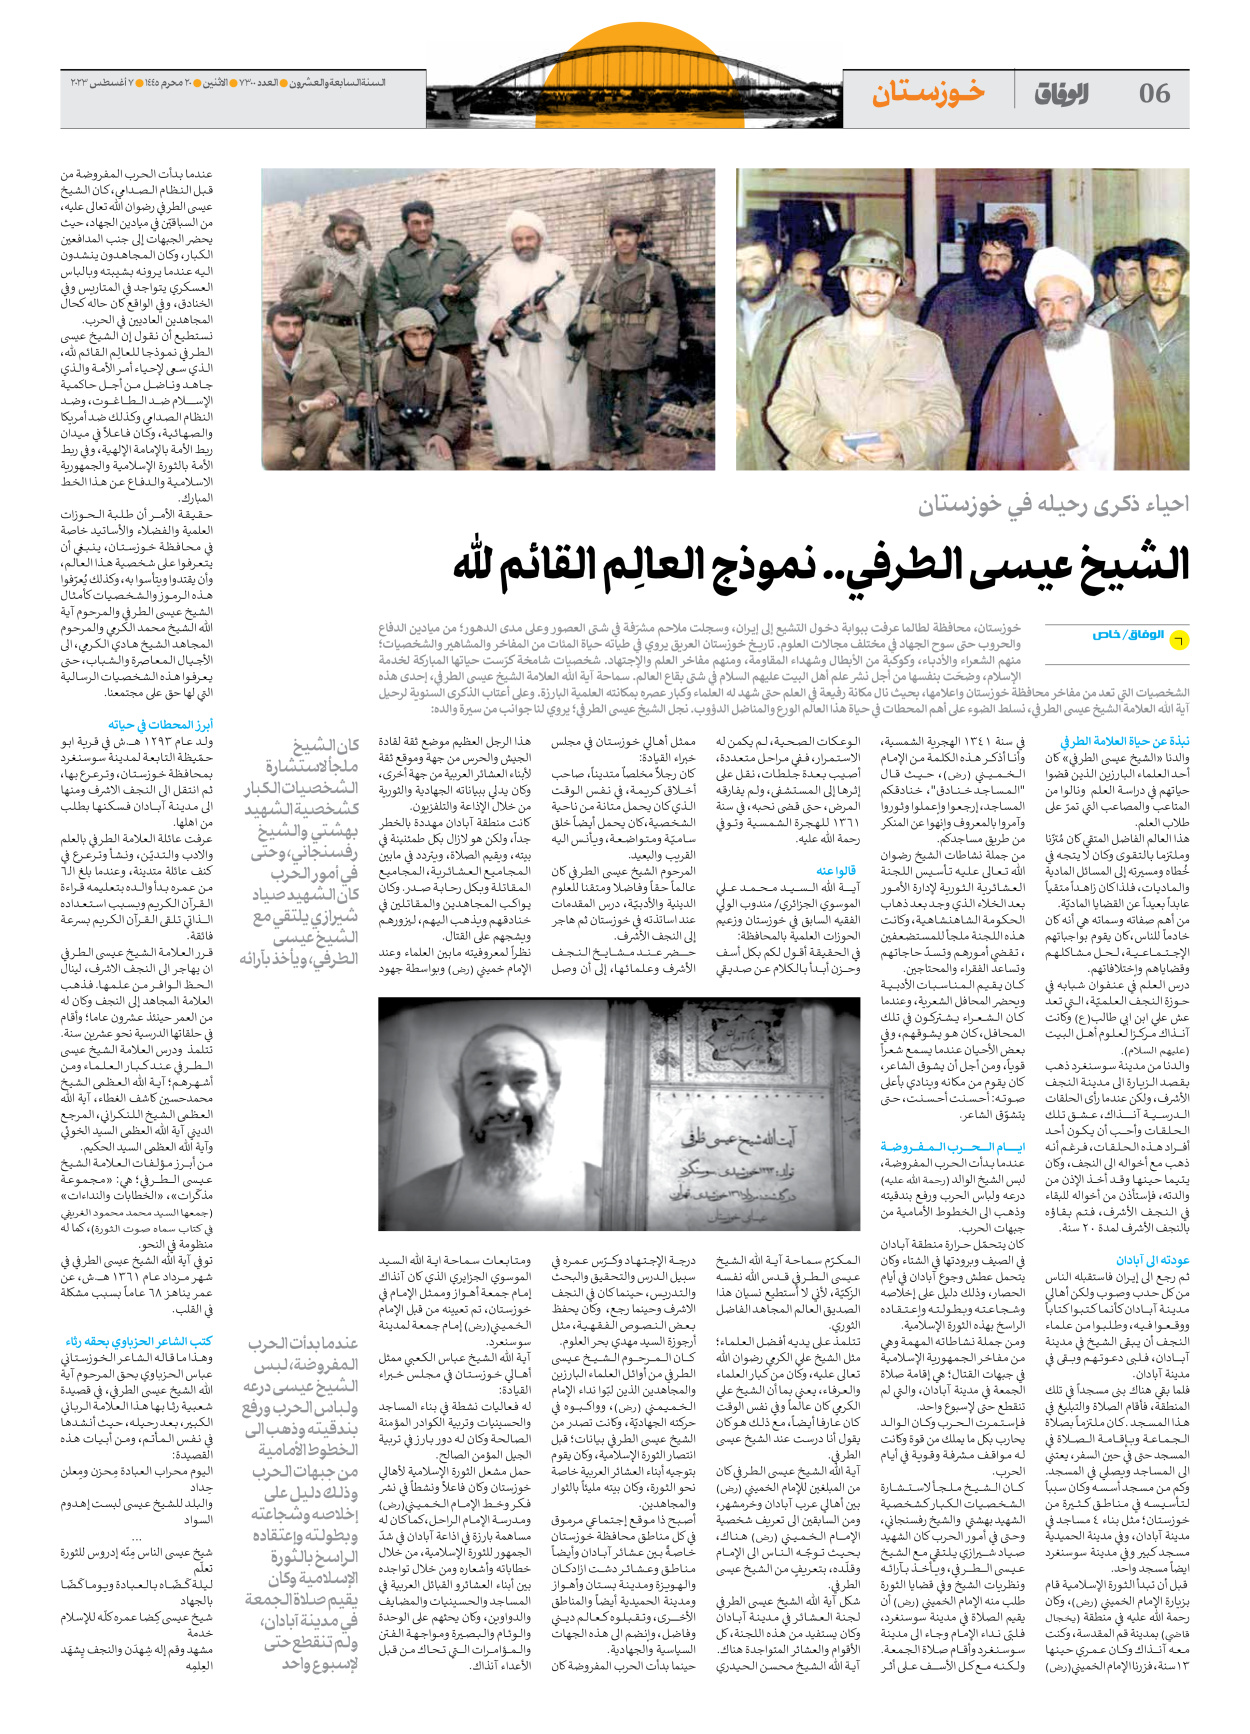 صحیفة ایران الدولیة الوفاق - العدد سبعة آلاف وثلاثمائة - ٠٧ أغسطس ٢٠٢٣ - الصفحة ٦